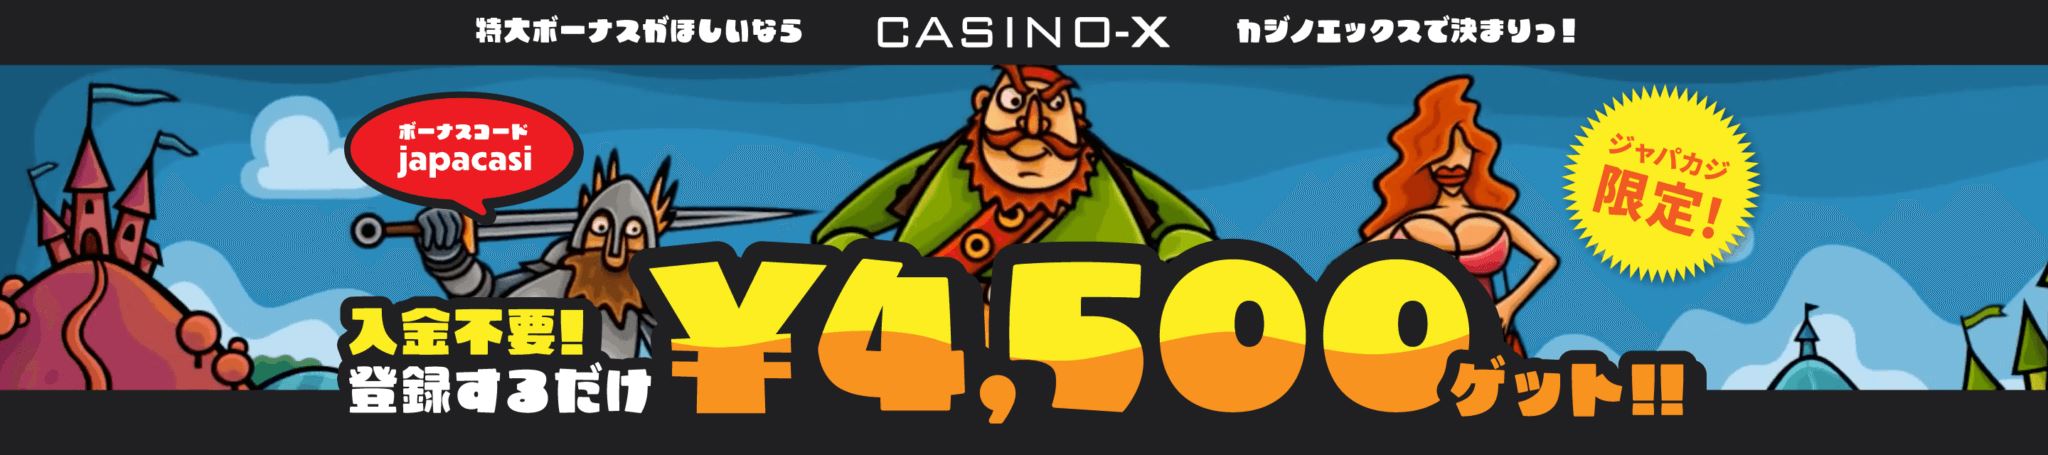 マルハン 本 城 データ 【Casino-X】ジャパカジだけの入金不要ボーナス！